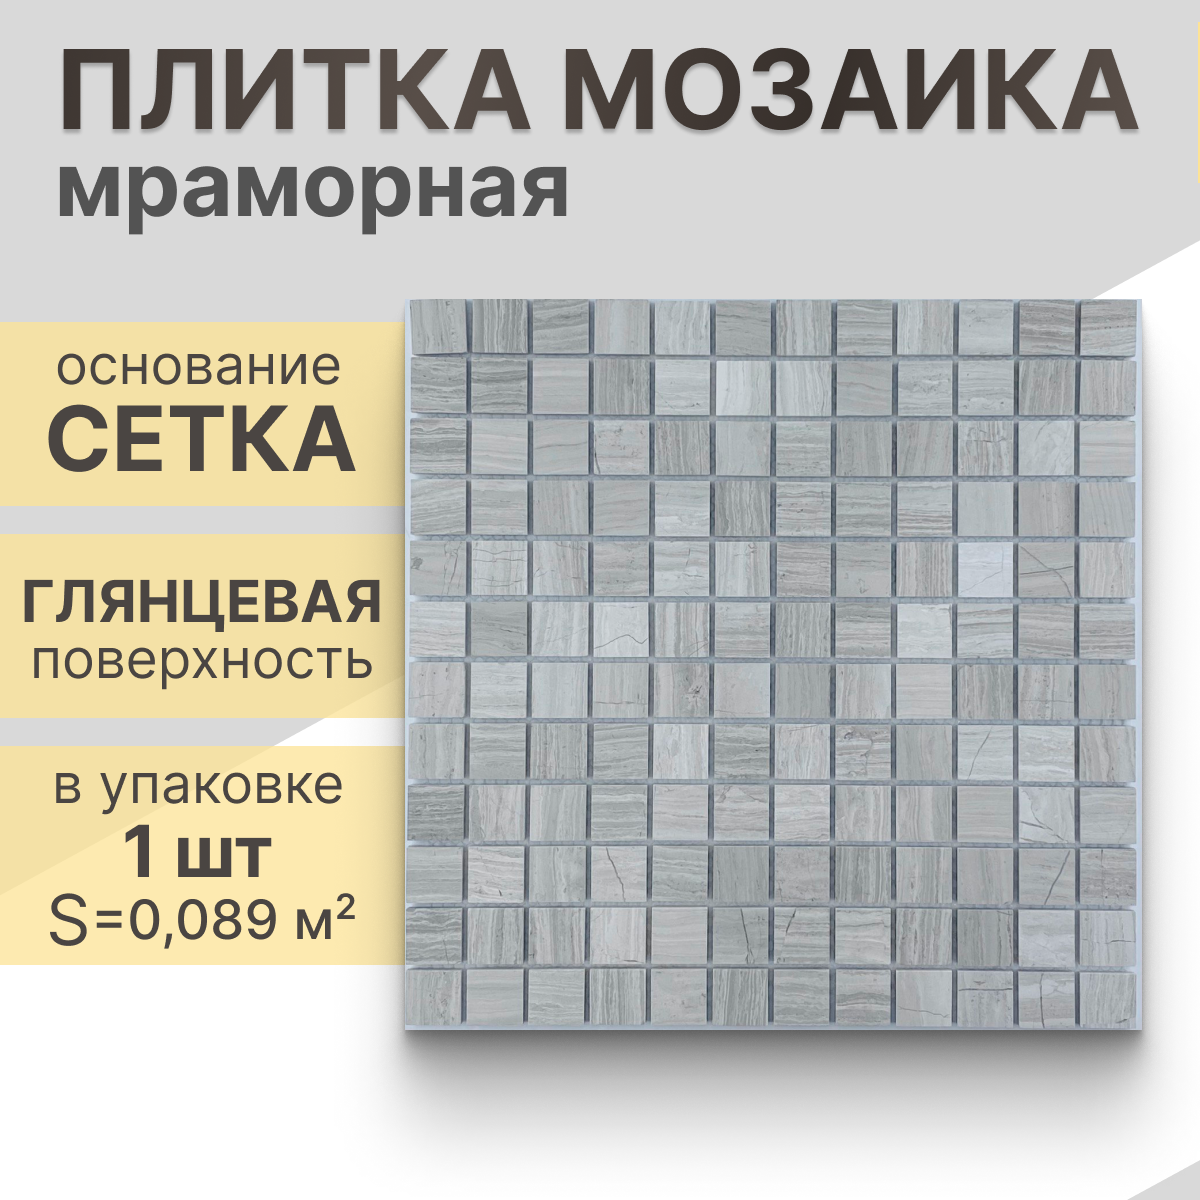 Мозаика (мрамор) NS mosaic Kp-751 29,8x29,8 см 1 шт (0,089 м²)